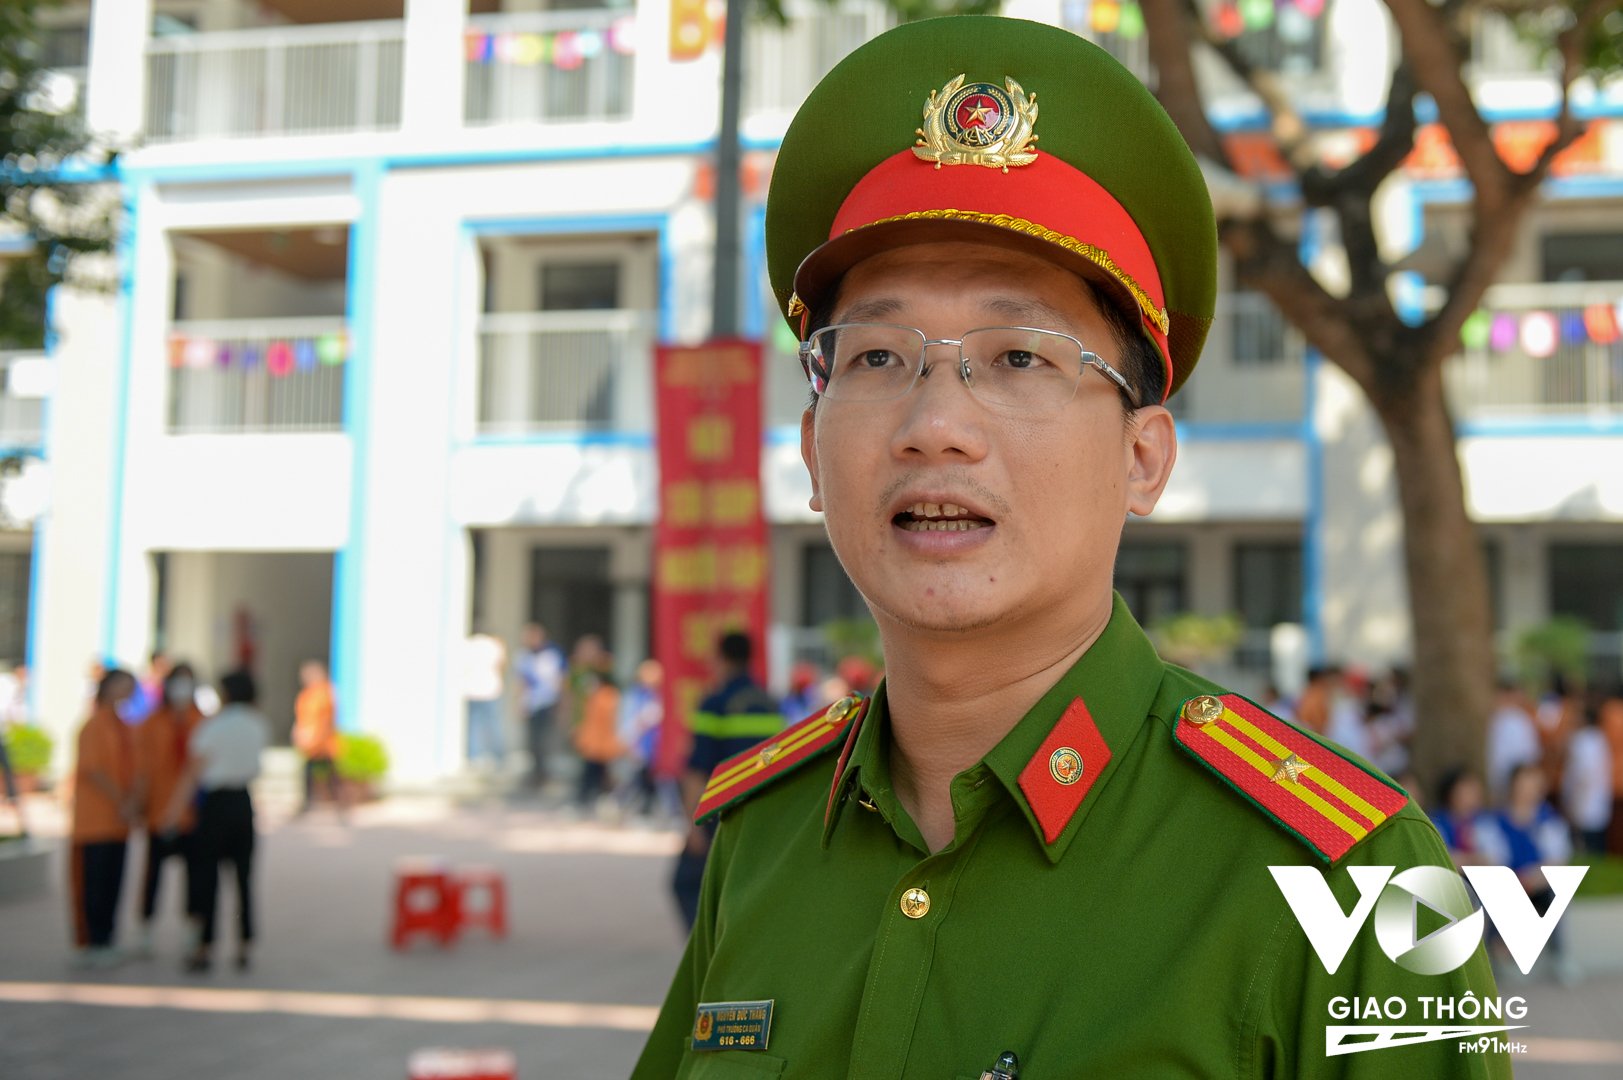 Thiếu tá Nguyễn Đức Thắng - Phó Trưởng Công an quận Ba Đình, Hà Nội.